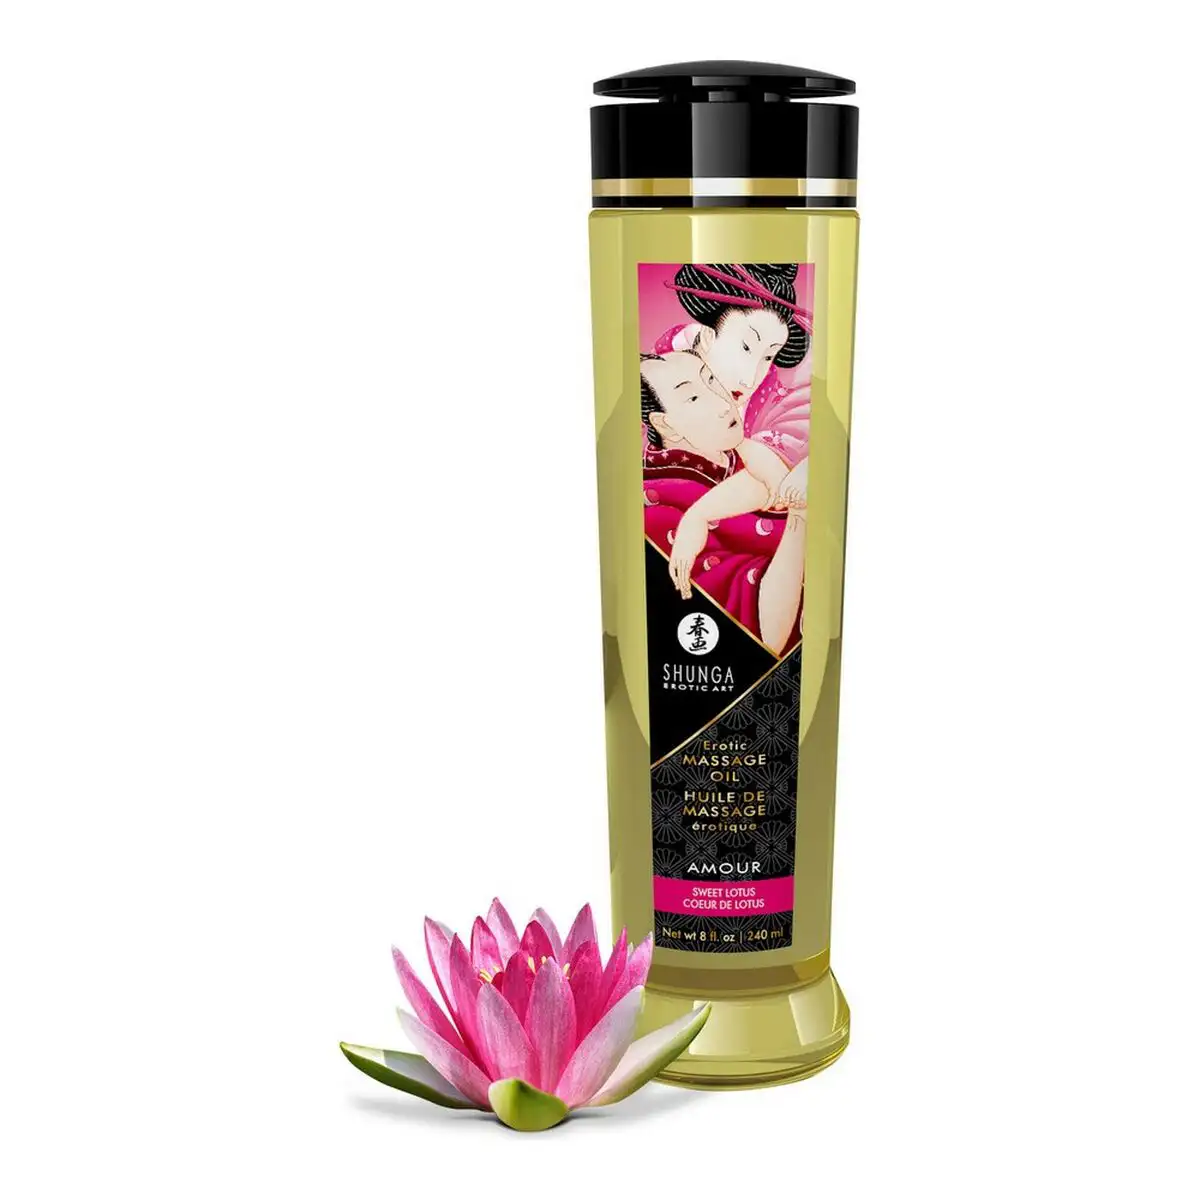 Huile de massage fleur de lotus amour shunga 240 ml _2520. DIAYTAR SENEGAL - Où Chaque Produit a son Histoire. Découvrez notre gamme de produits, chacun portant en lui le récit de l'artisanat et de la passion, pour vous offrir une expérience de shopping authentique.